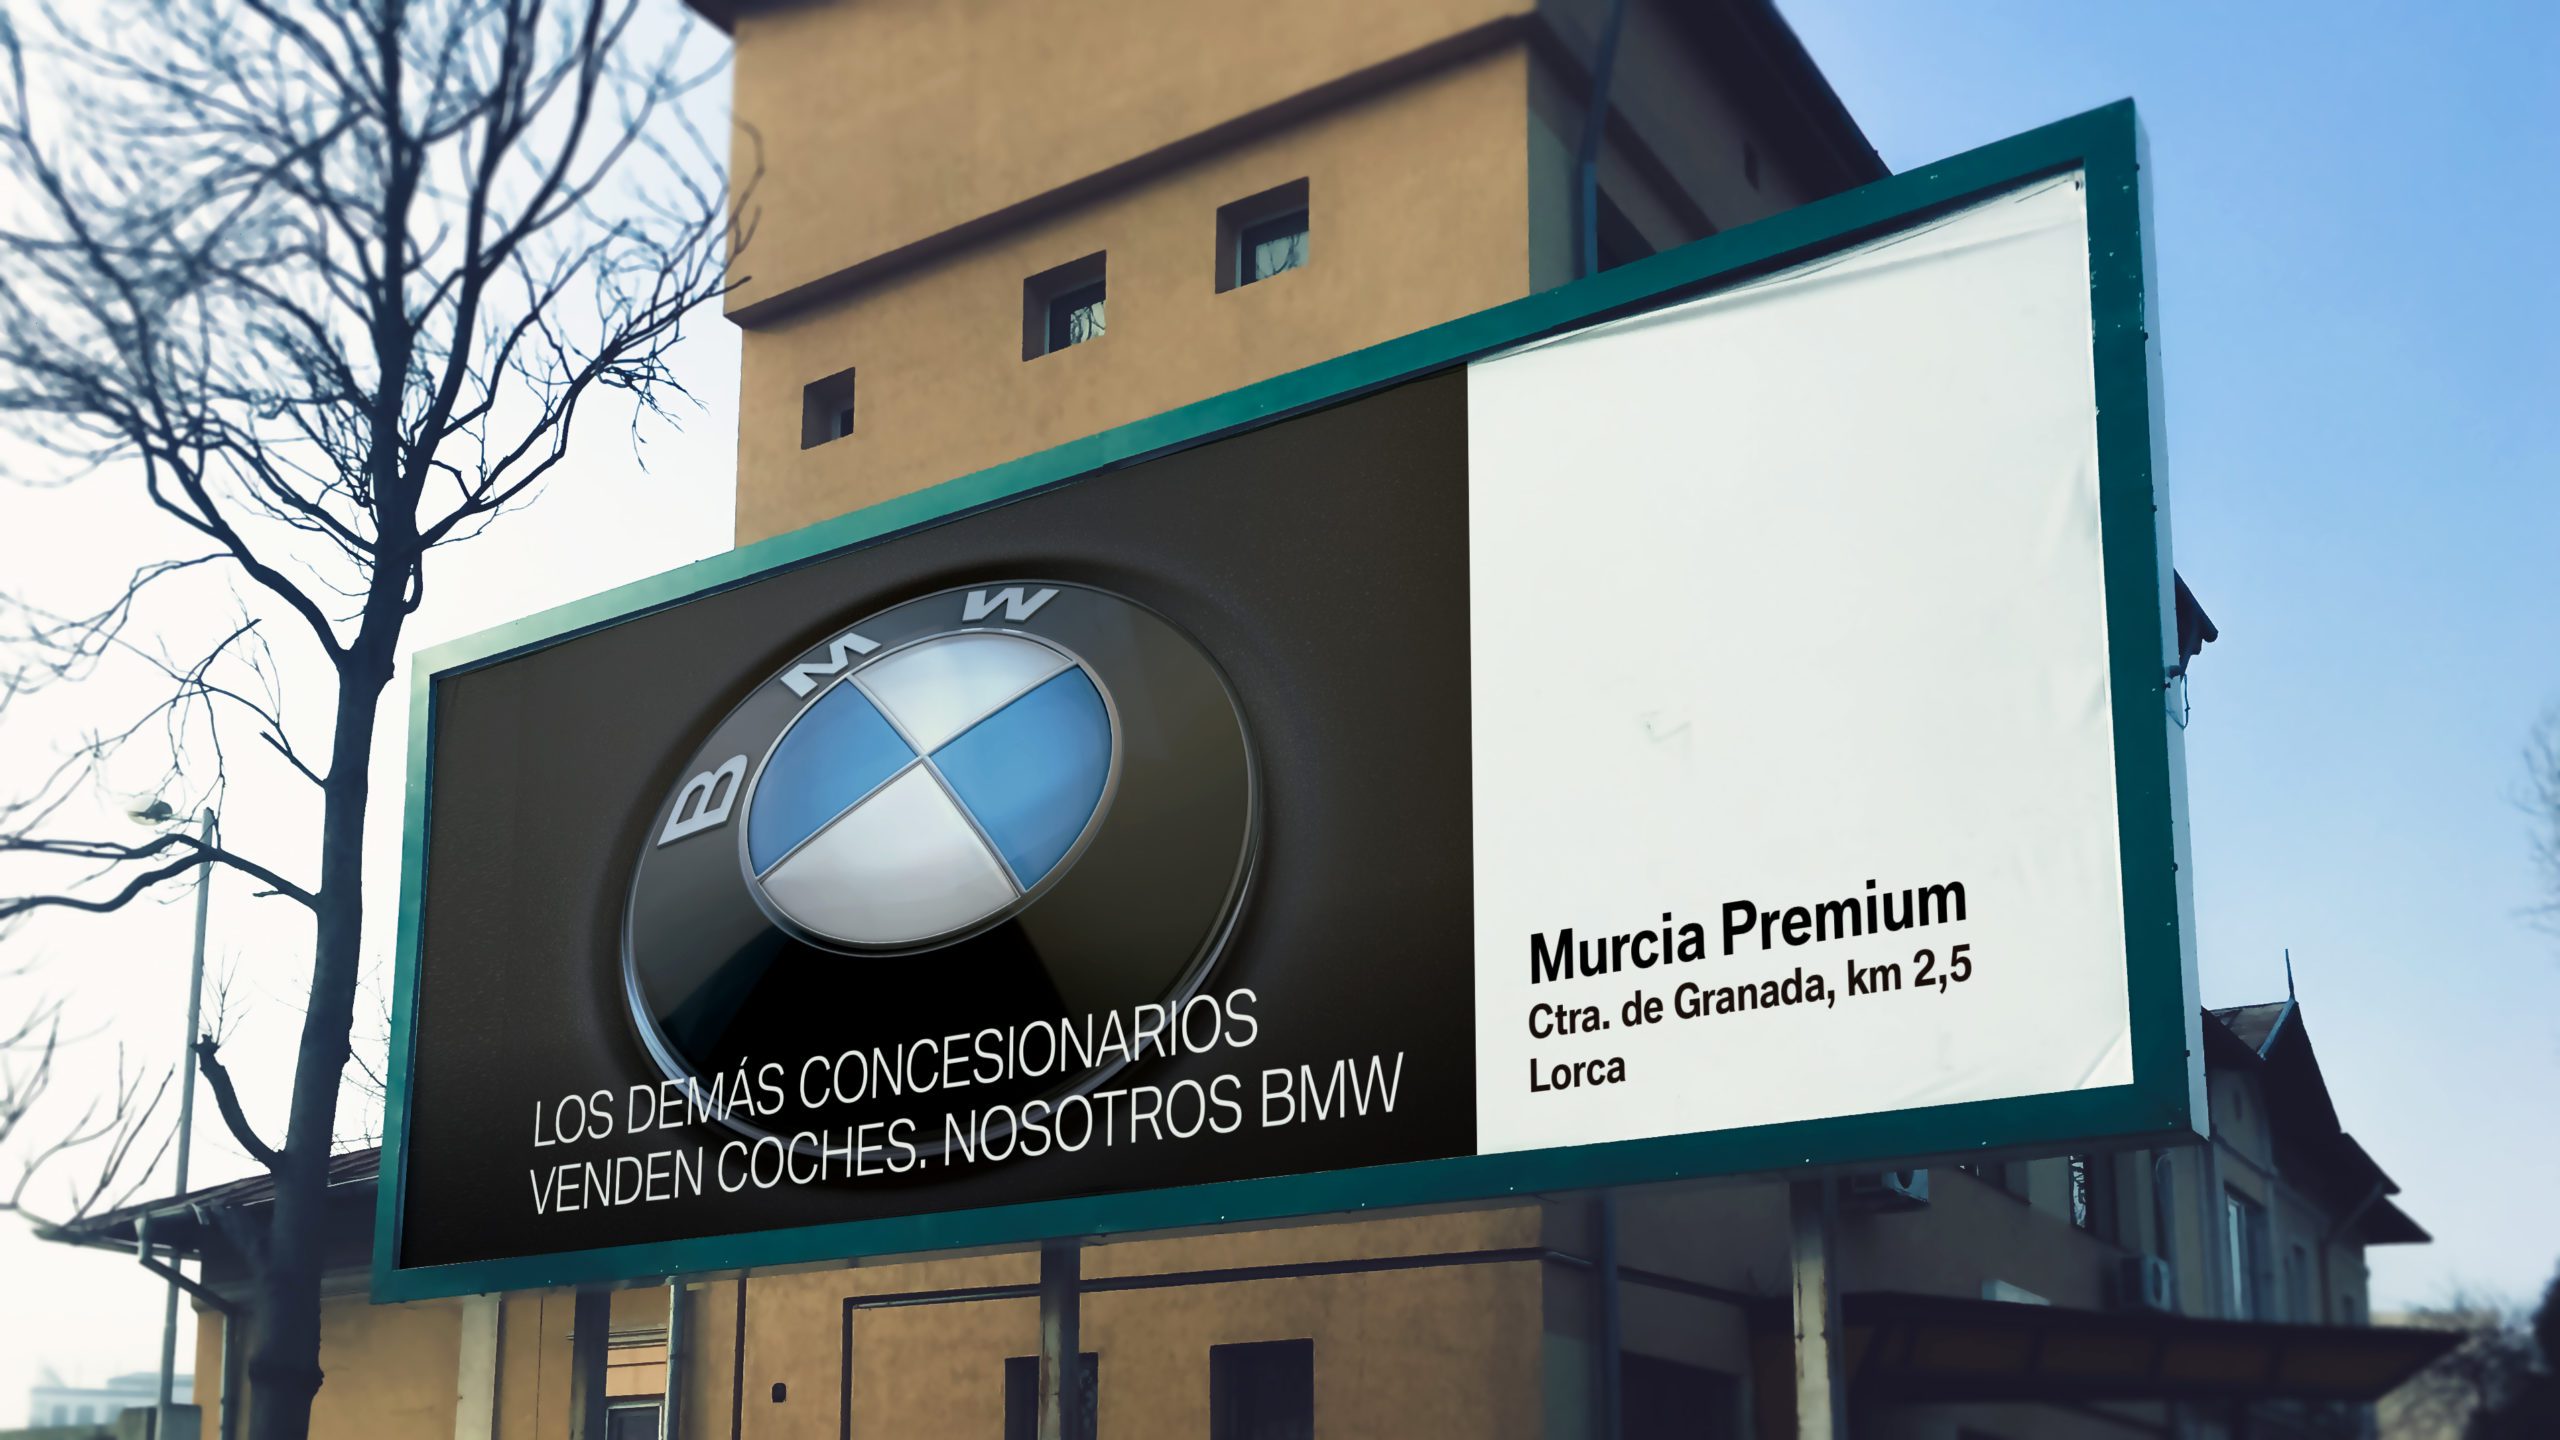 BMW Valla Publicitaria